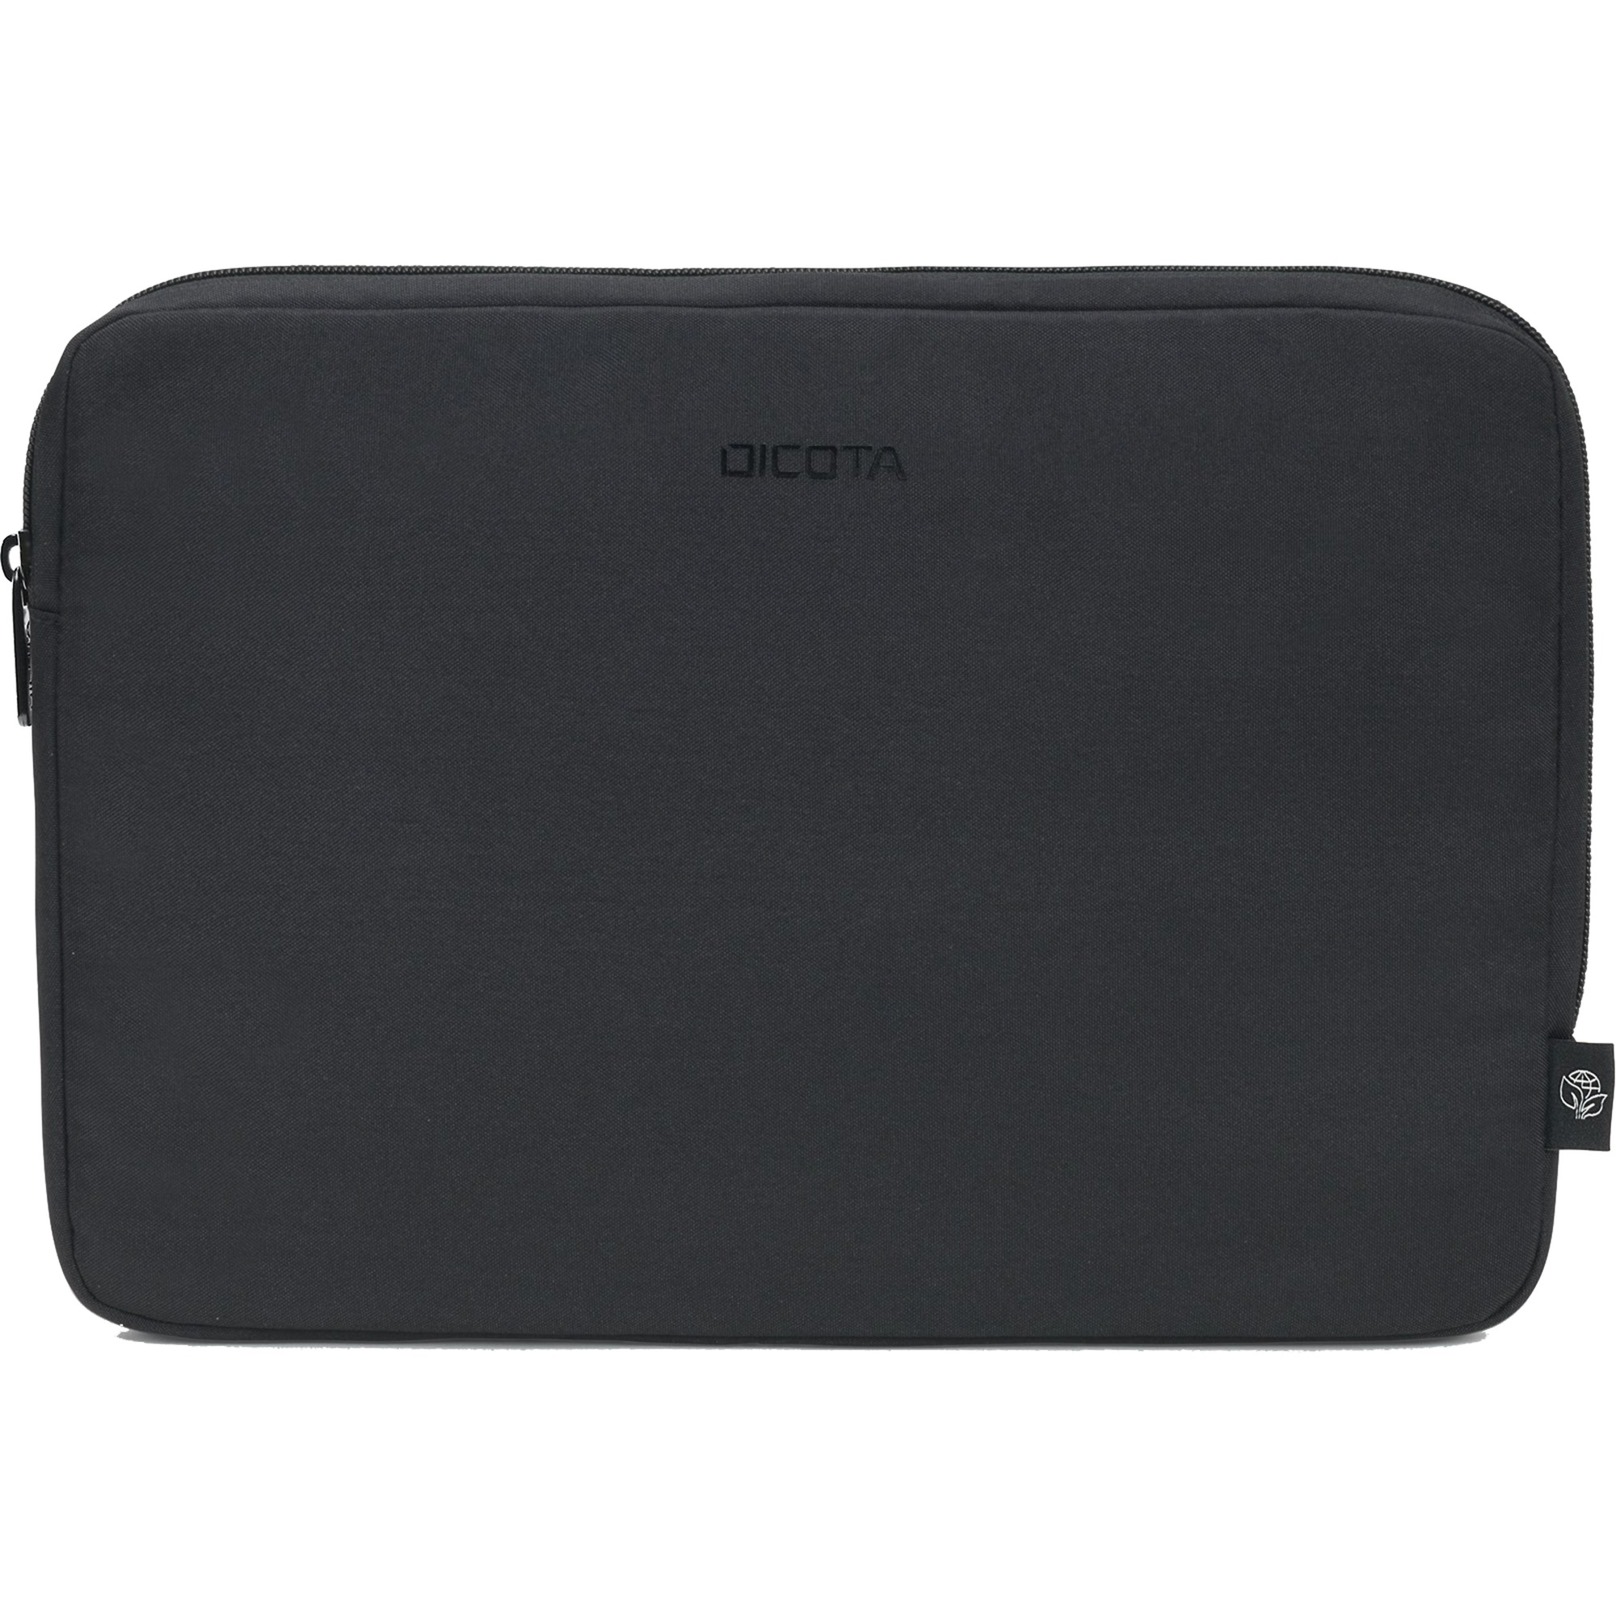 Image of Alternate - Eco Sleeve BASE, Notebooktasche online einkaufen bei Alternate